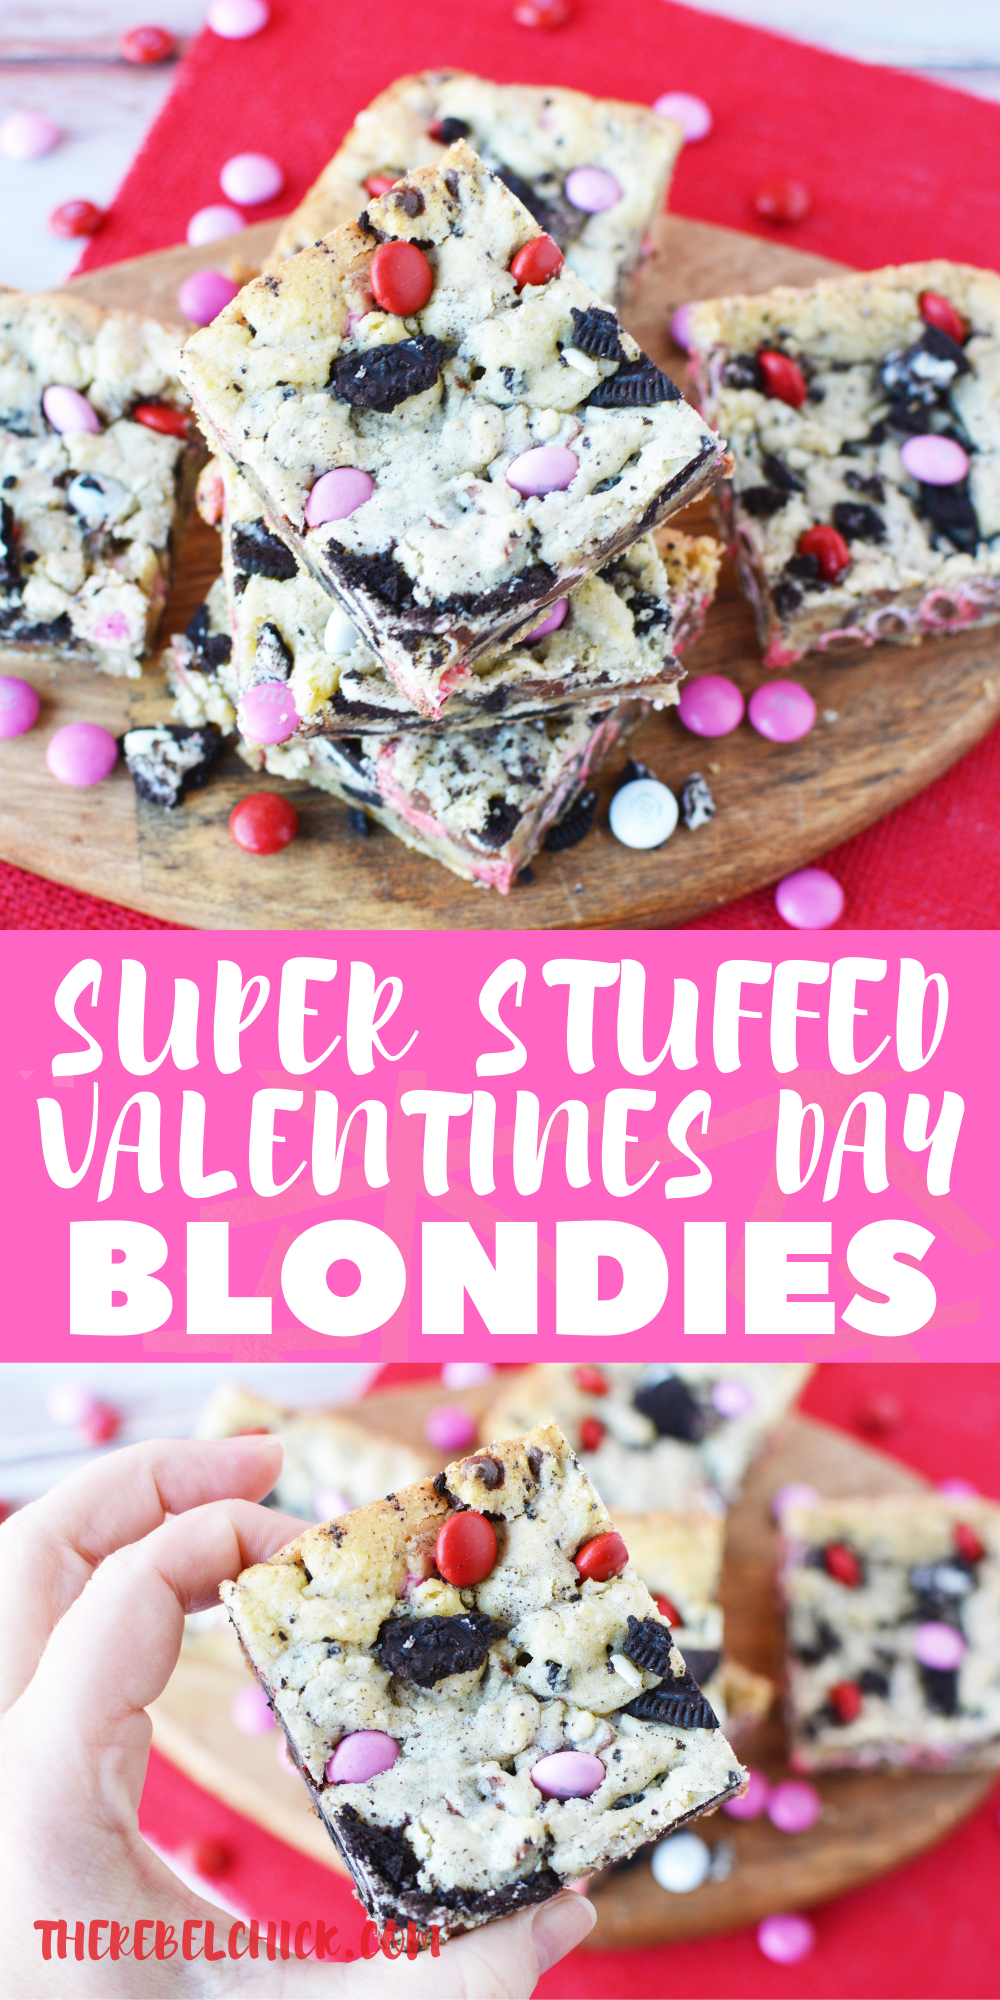 Valentine's Day Blondies Recipe